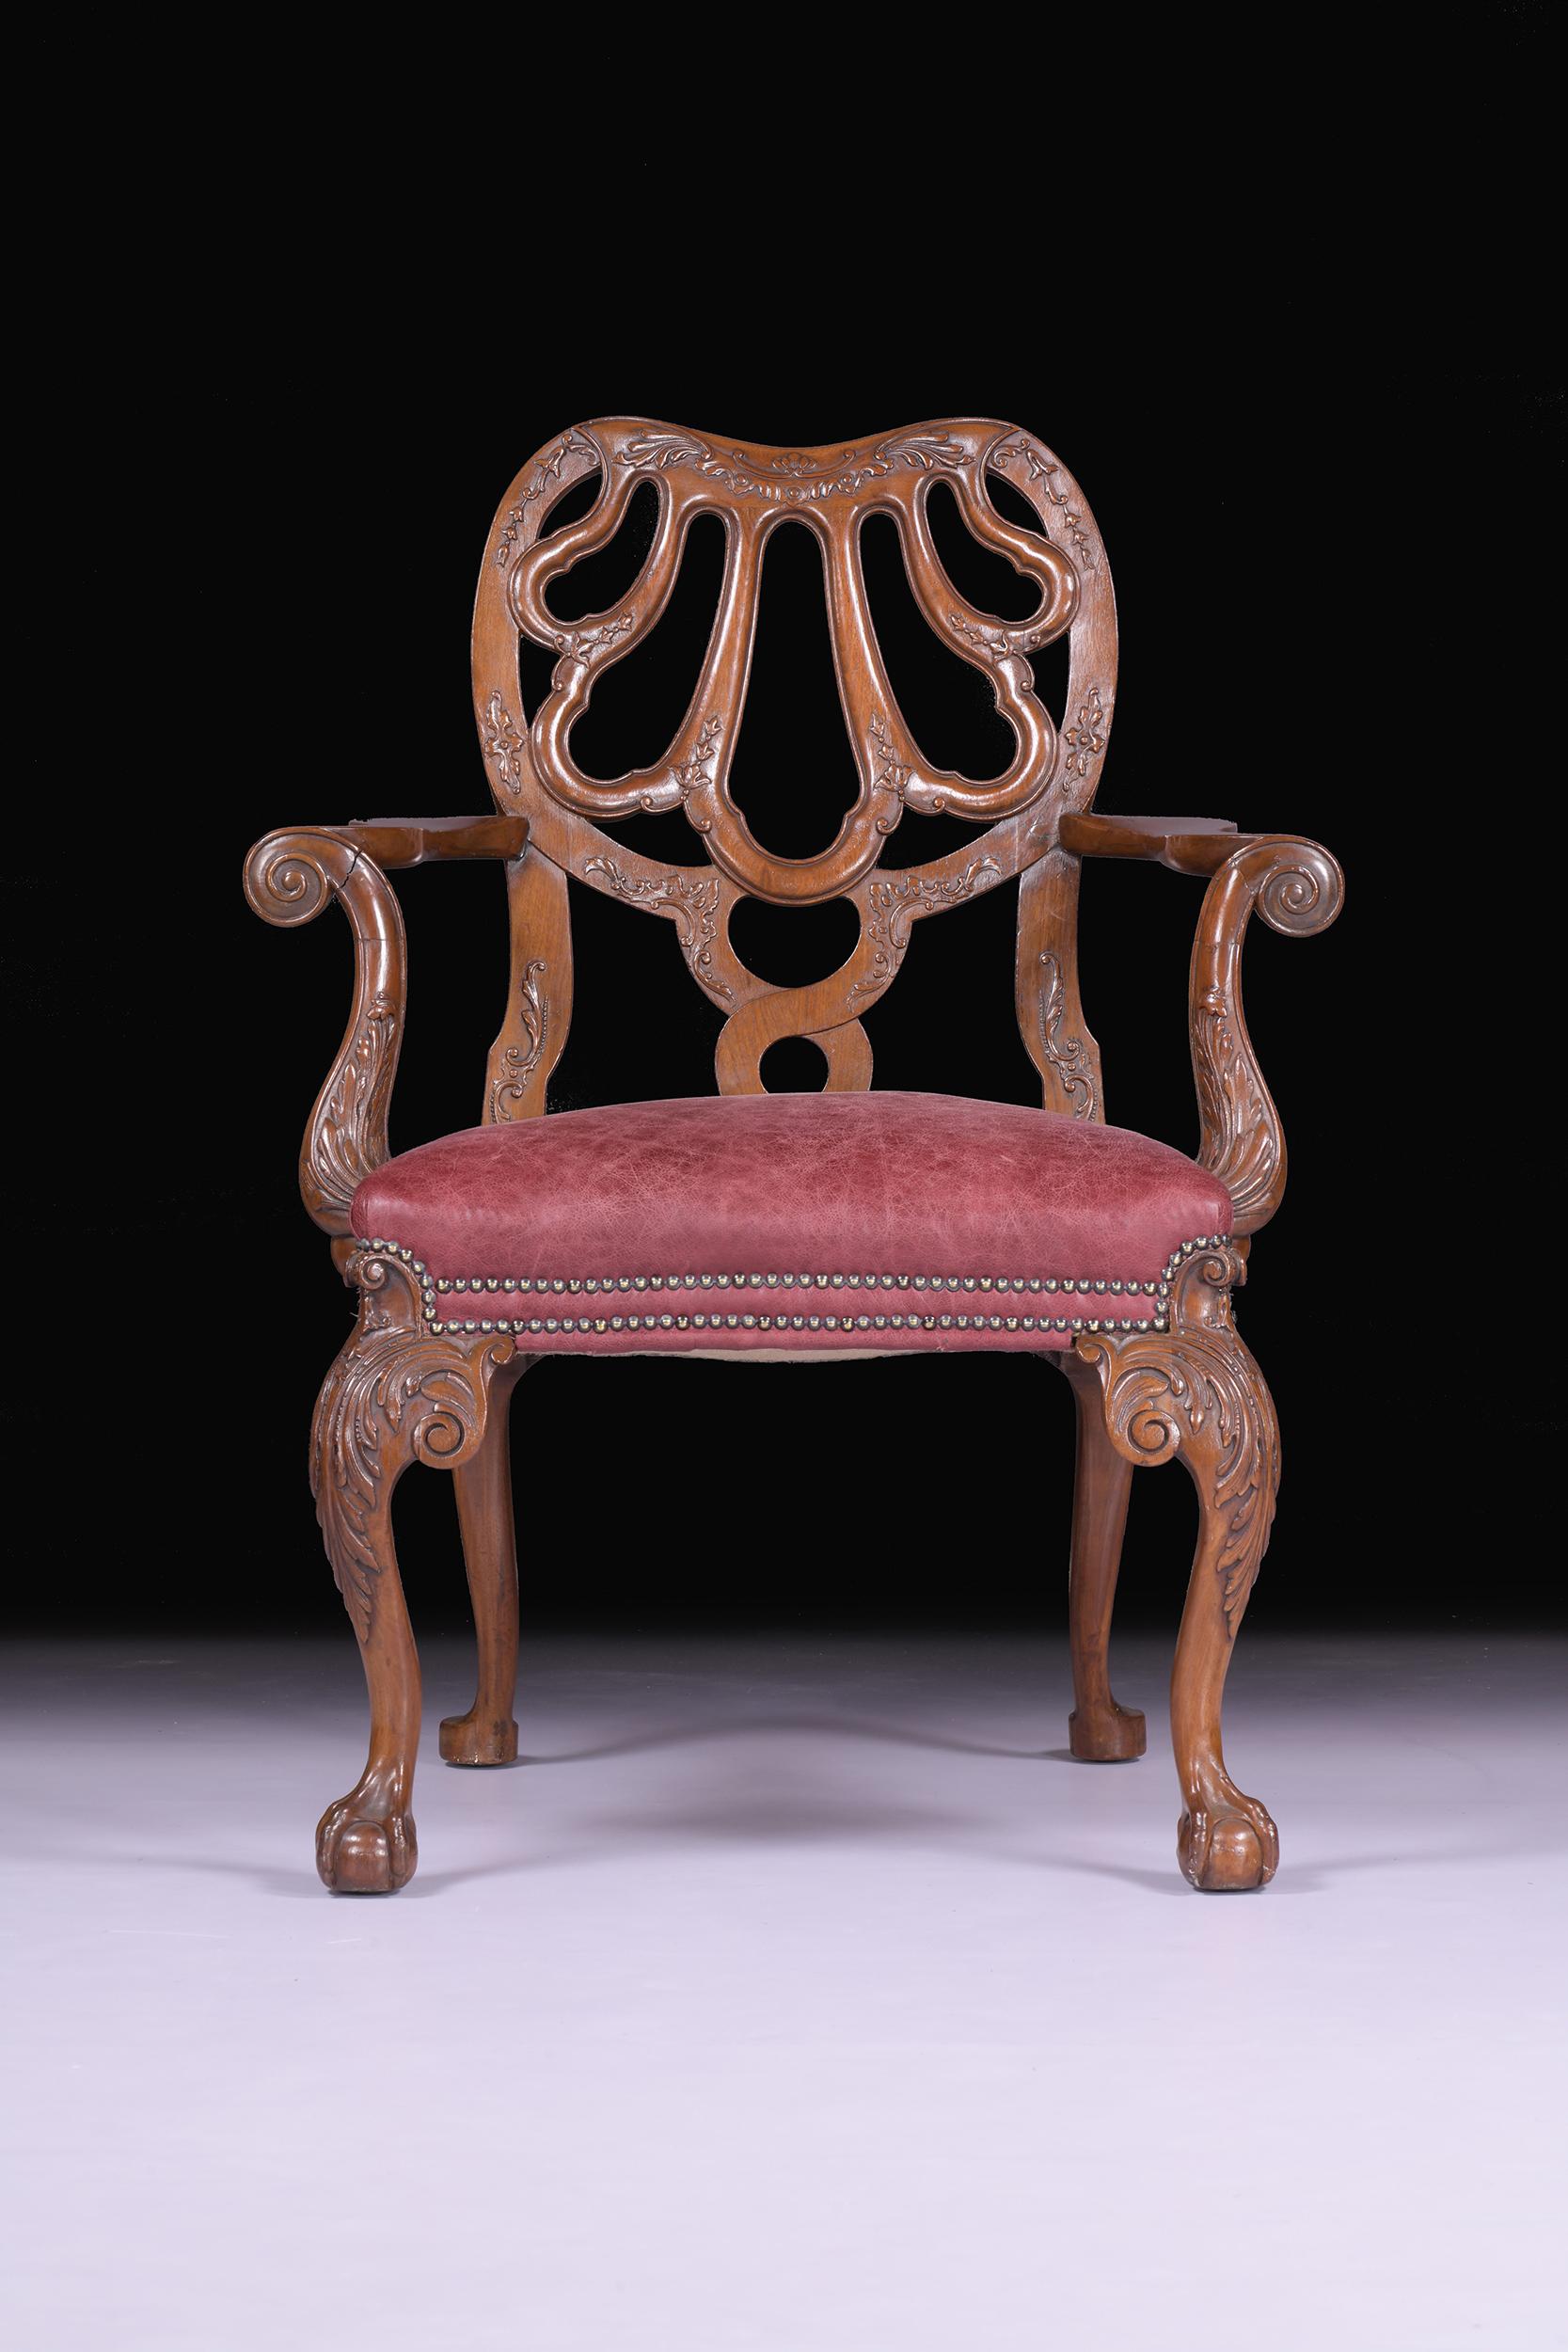 Superbe fauteuil anglais ancien du XIXe siècle de la manière de Giles. Le dossier est constitué d'une coquille stylisée ajourée et d'accoudoirs à volutes avec un décor sculpté en bas-relief, l'assise est rembourrée et repose sur des pieds cabriole à